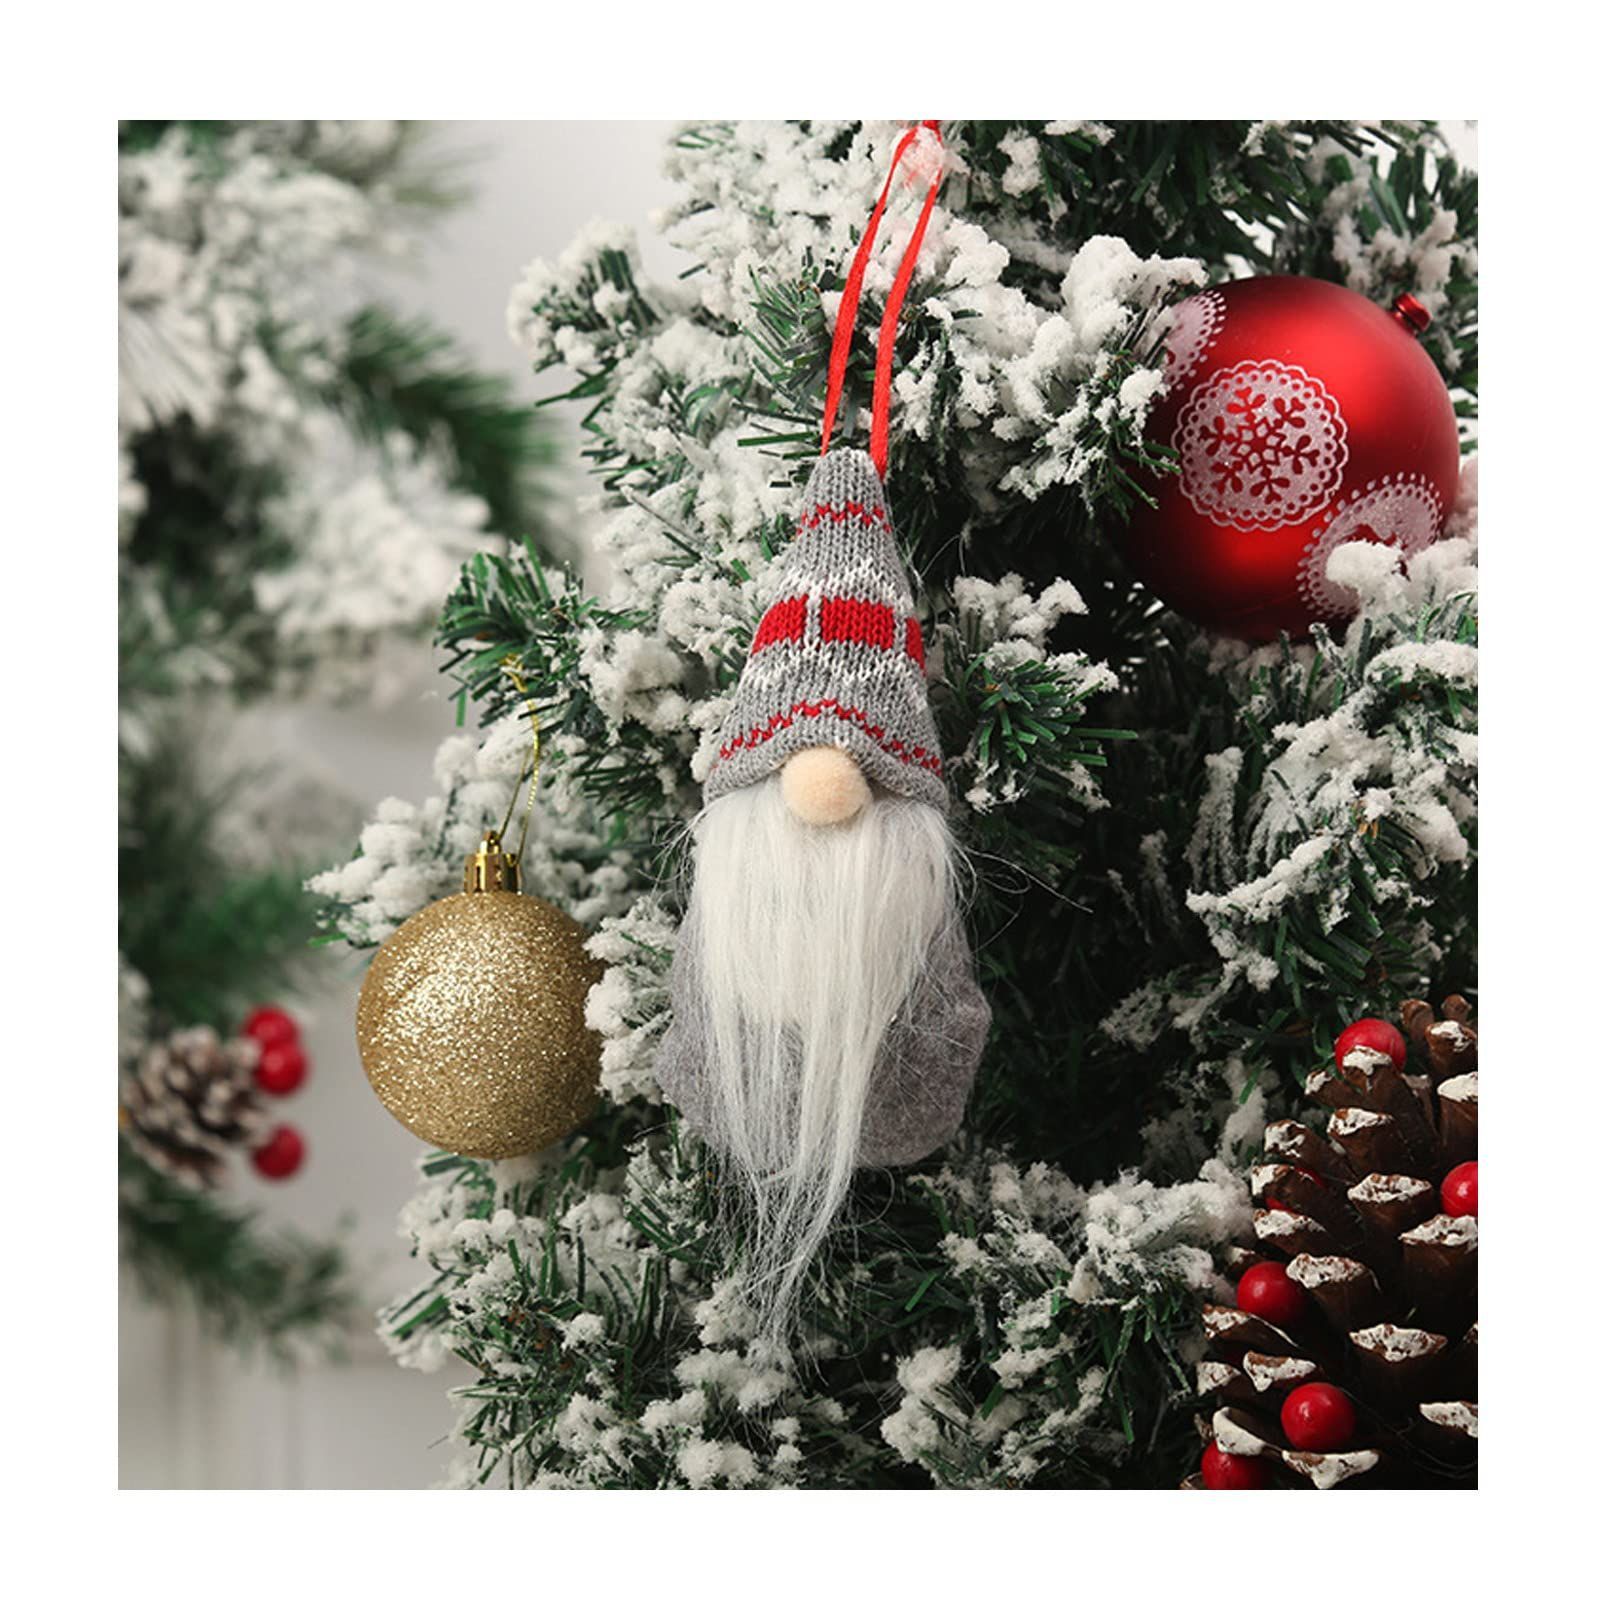 【在庫処分】サンタ 人形 クリスマスツリーの飾り ハンドメイド クリスマス飾り置物 飾り クリスマスツリー ツリー 装飾 フェルト オーナメント  クリスマス サンタクロースペンダント人形 室内 インテリア 16C*7CM（4個セット）